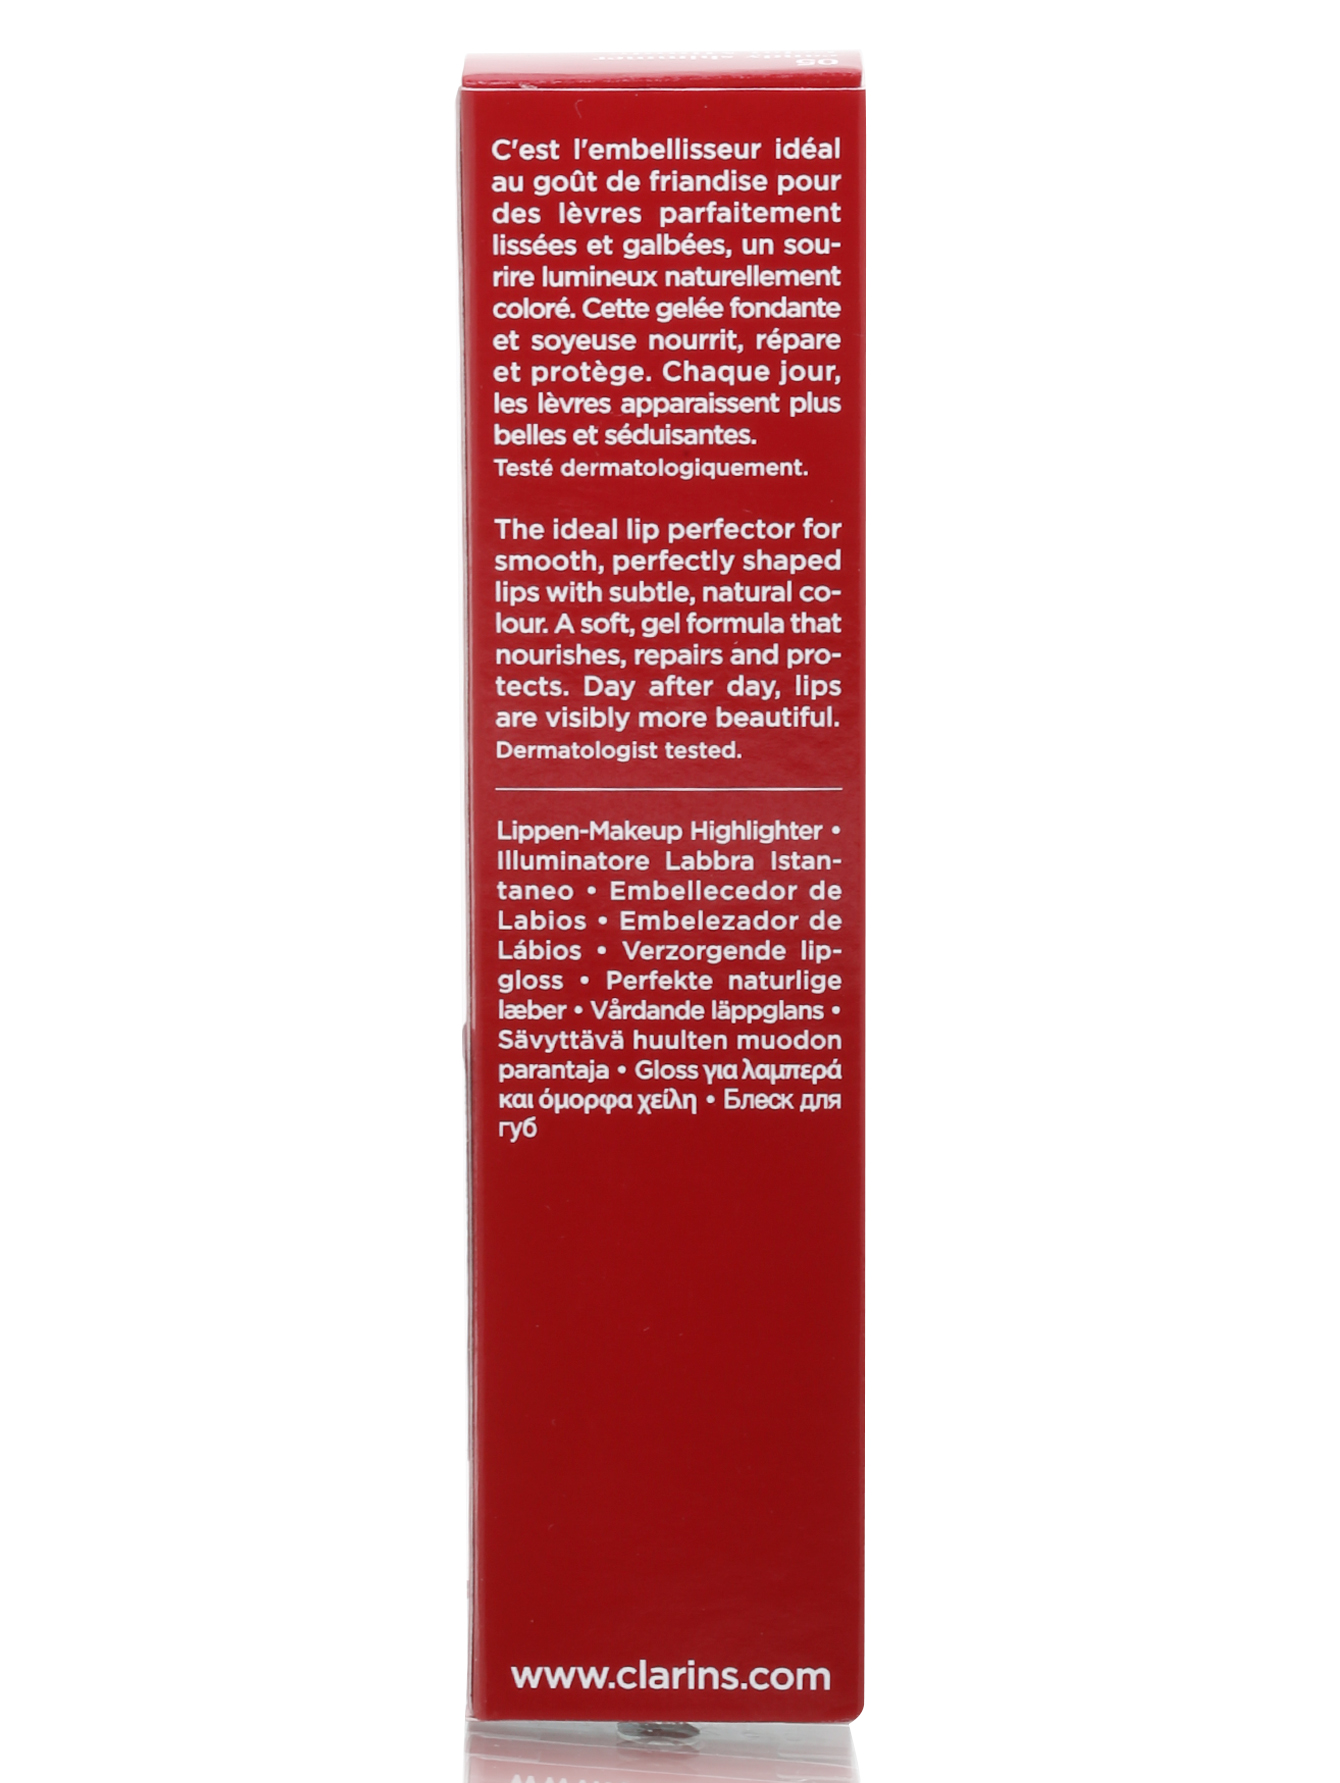 Блеск для губ - №05 Candy shimmer, Lip Liner - Модель Верх-Низ